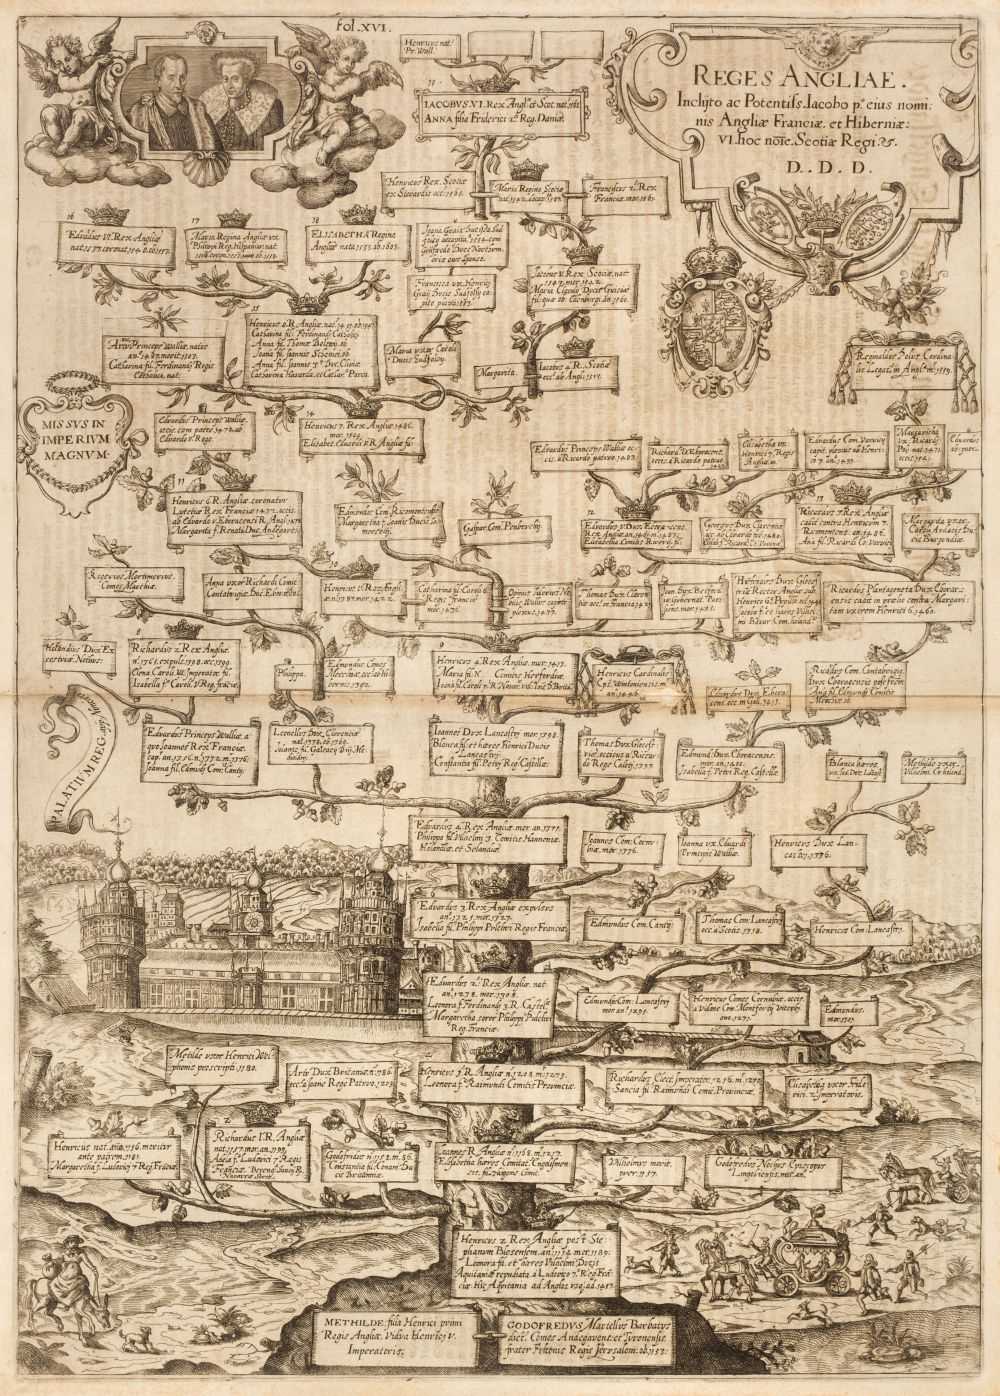 Lot 171 - Genealogical chart. Reges Angliae. Inclyto ac Potentiss Jacobo P°...., circa 1610